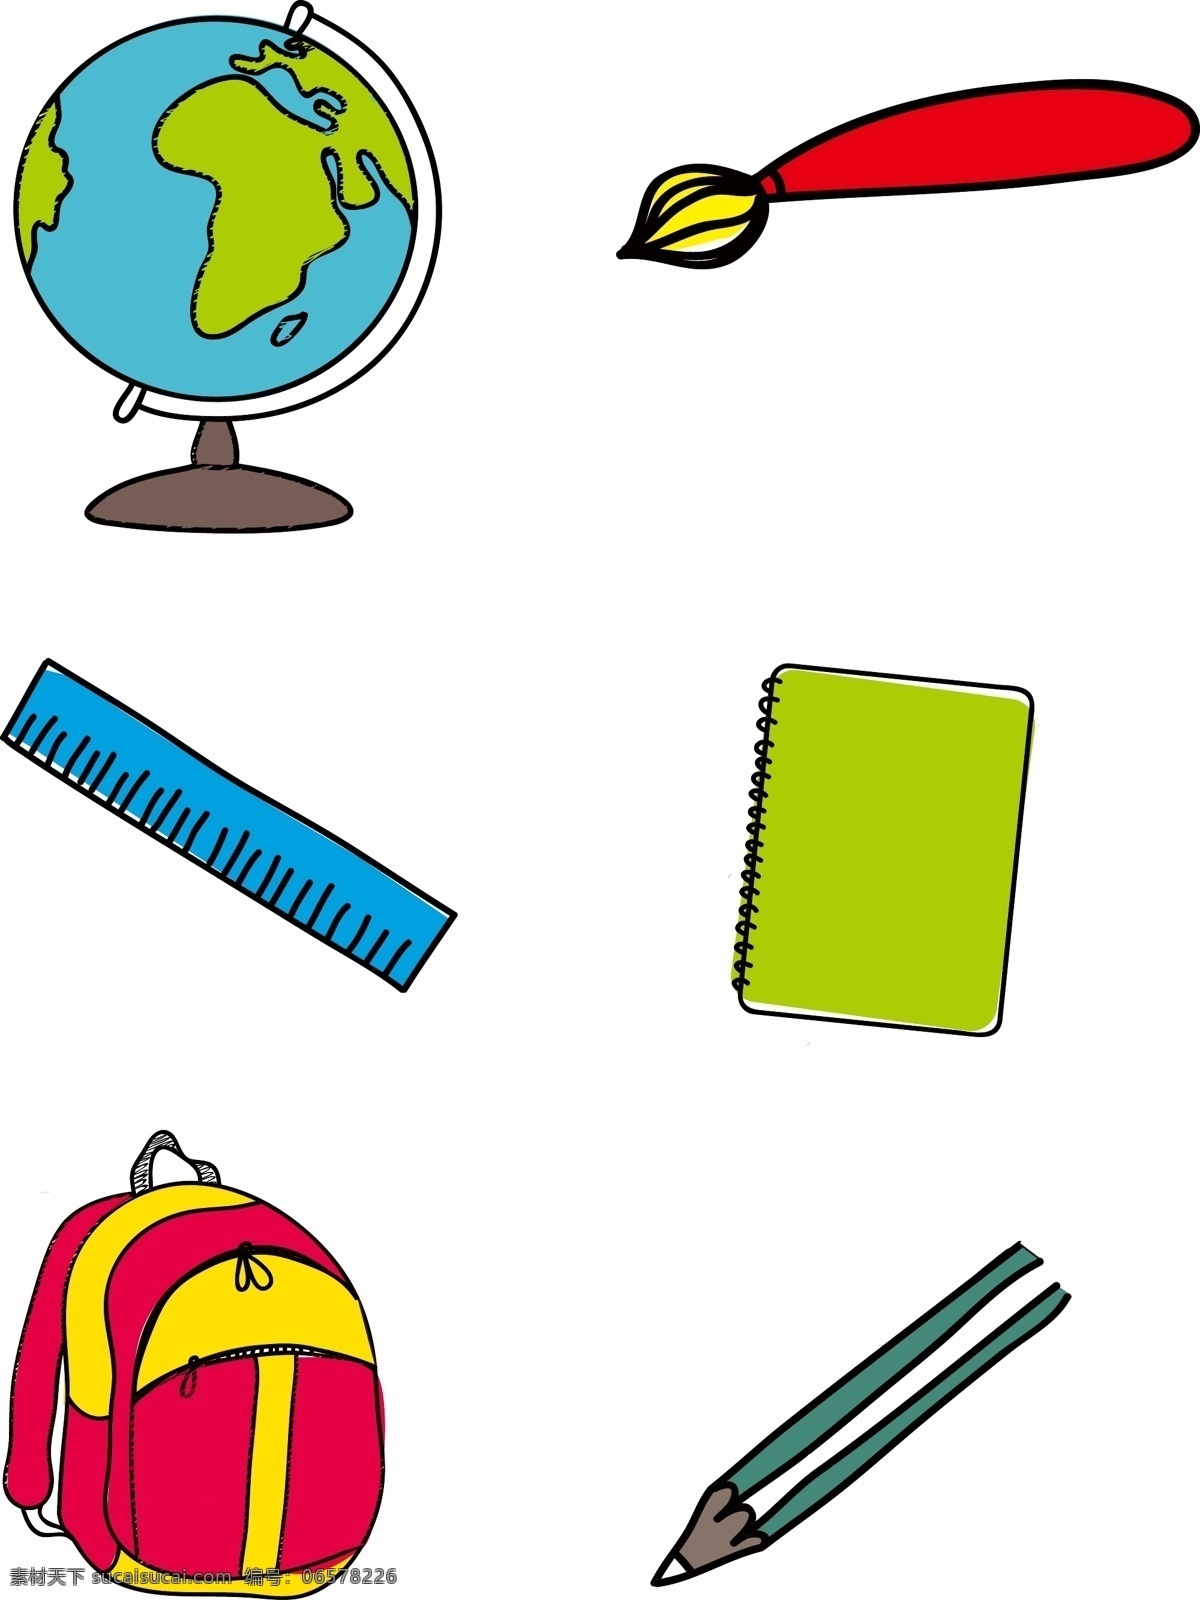 卡通 矢量 手绘 学生 文具用品 卡通矢量 文具 地球仪 画笔 尺子 本子 书包 铅笔 记录本 上学 学校 用具 教学